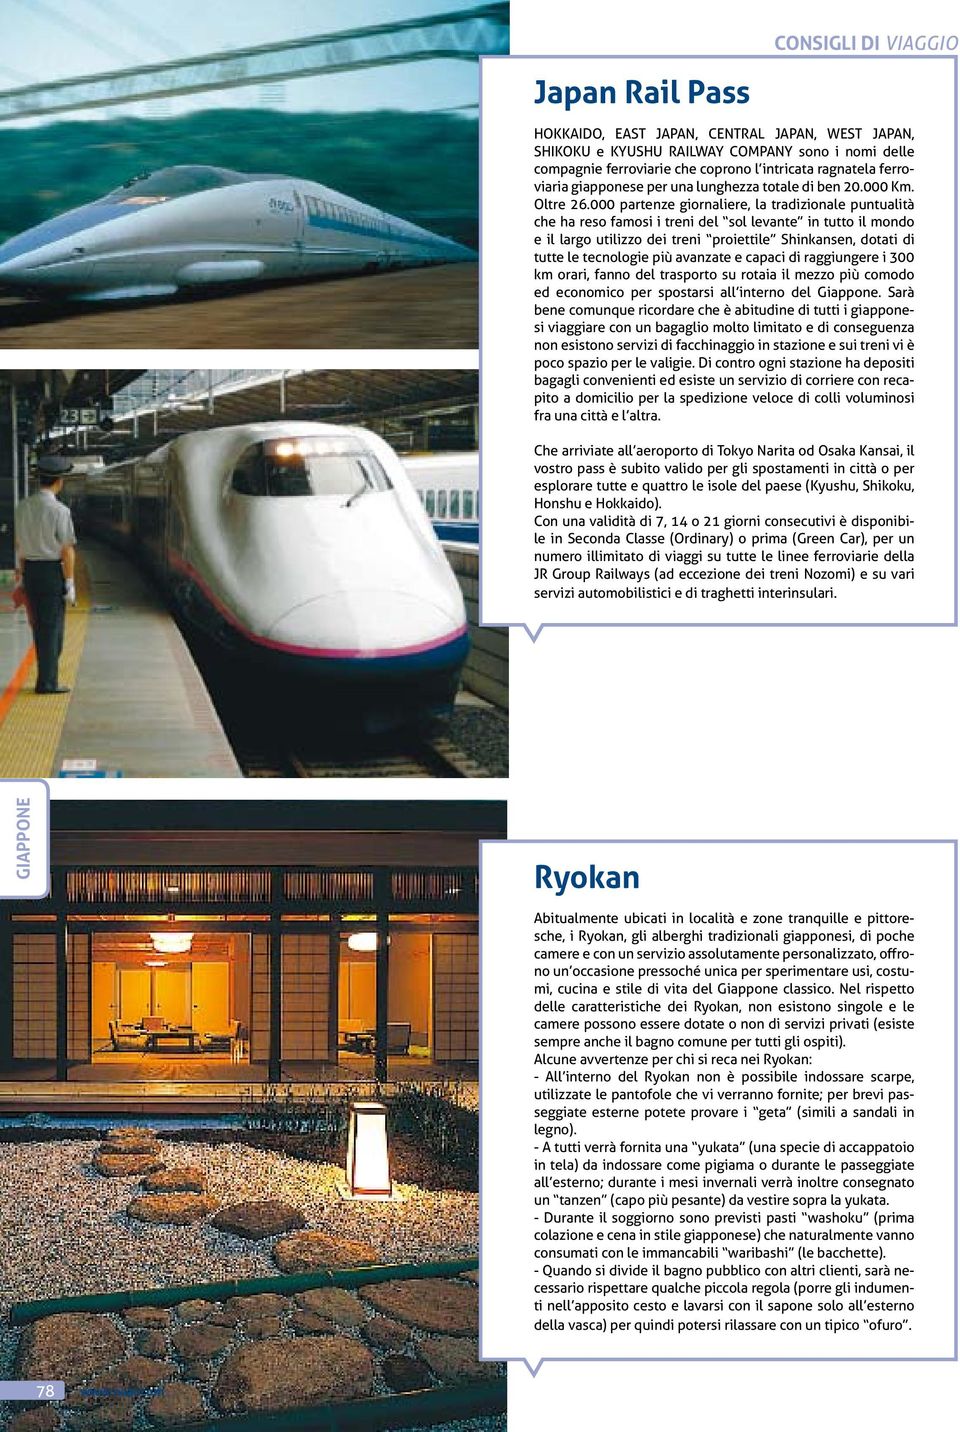 000 partenze giornaliere, la tradizionale puntualità che ha reso famosi i treni del sol levante in tutto il mondo e il largo utilizzo dei treni proiettile Shinkansen, dotati di tutte le tecnologie